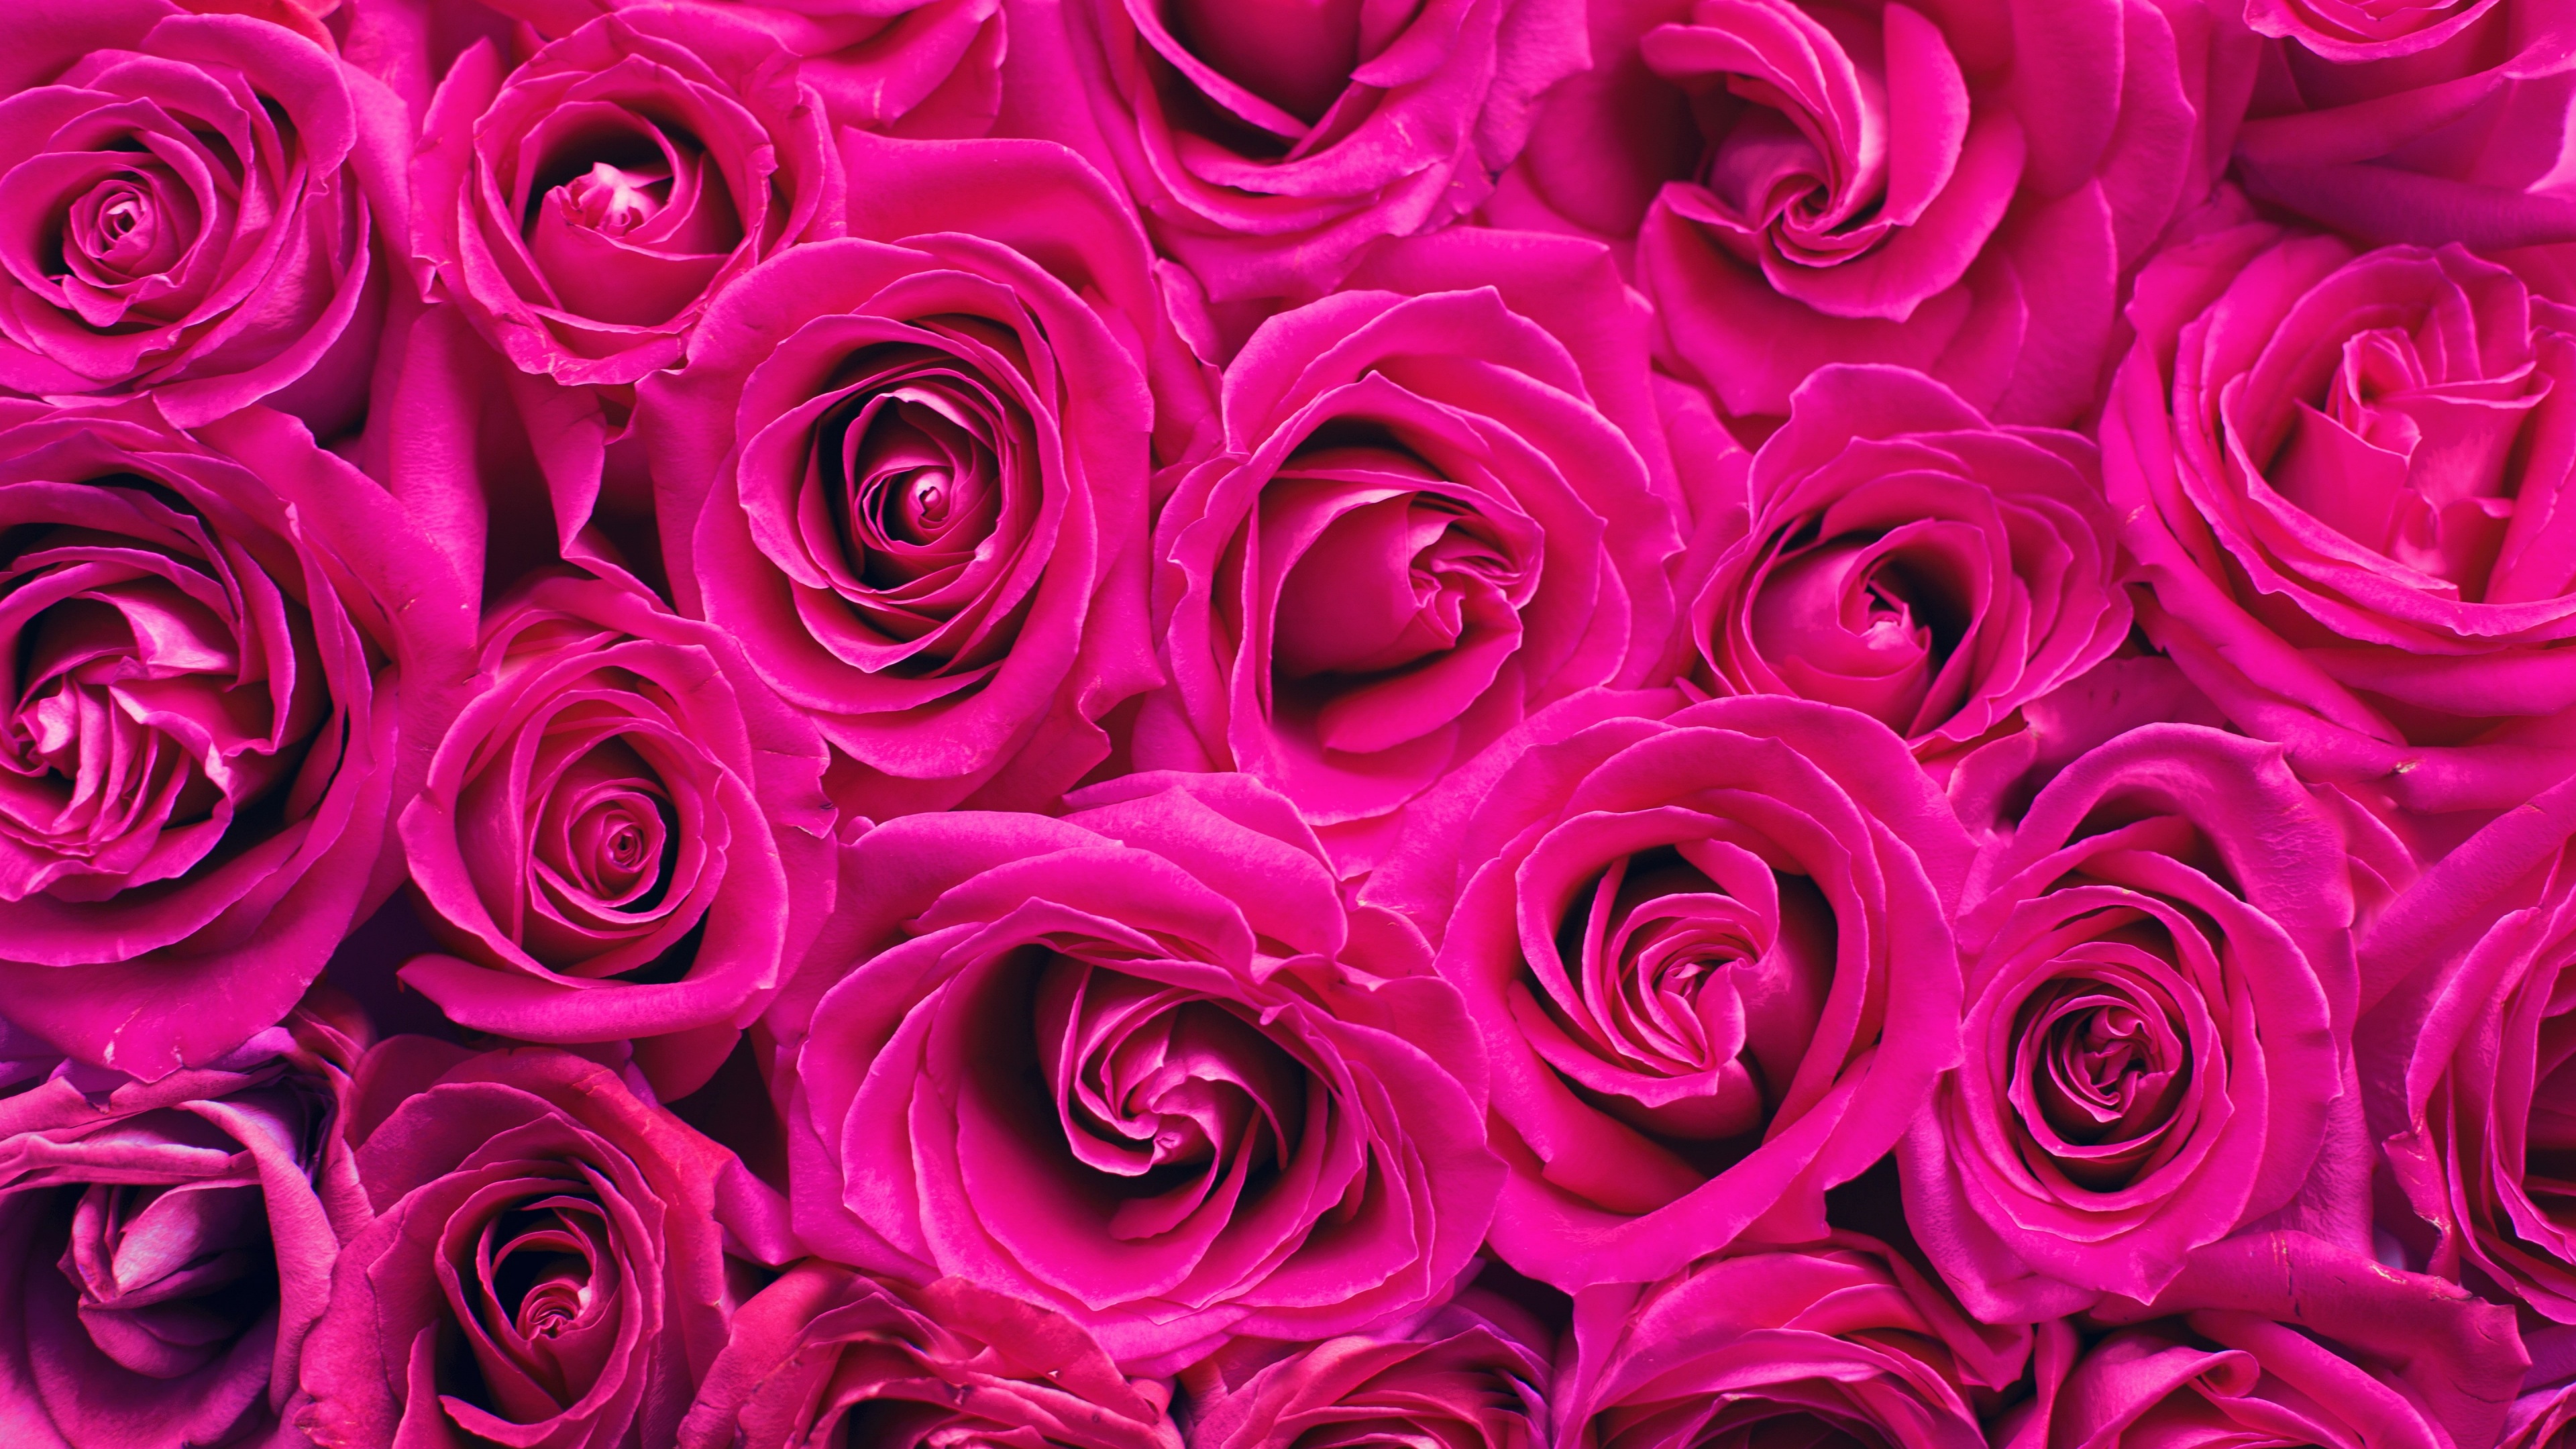 Với sắc hồng ngọt ngào, hoa hồng hồng không chỉ tượng trưng cho tình yêu mà còn là biểu hiện của sự đội lốt nữ tính và dịu dàng. Hãy bấm vào hình ảnh để thưởng thức những bông hoa đẹp nhất nhé!